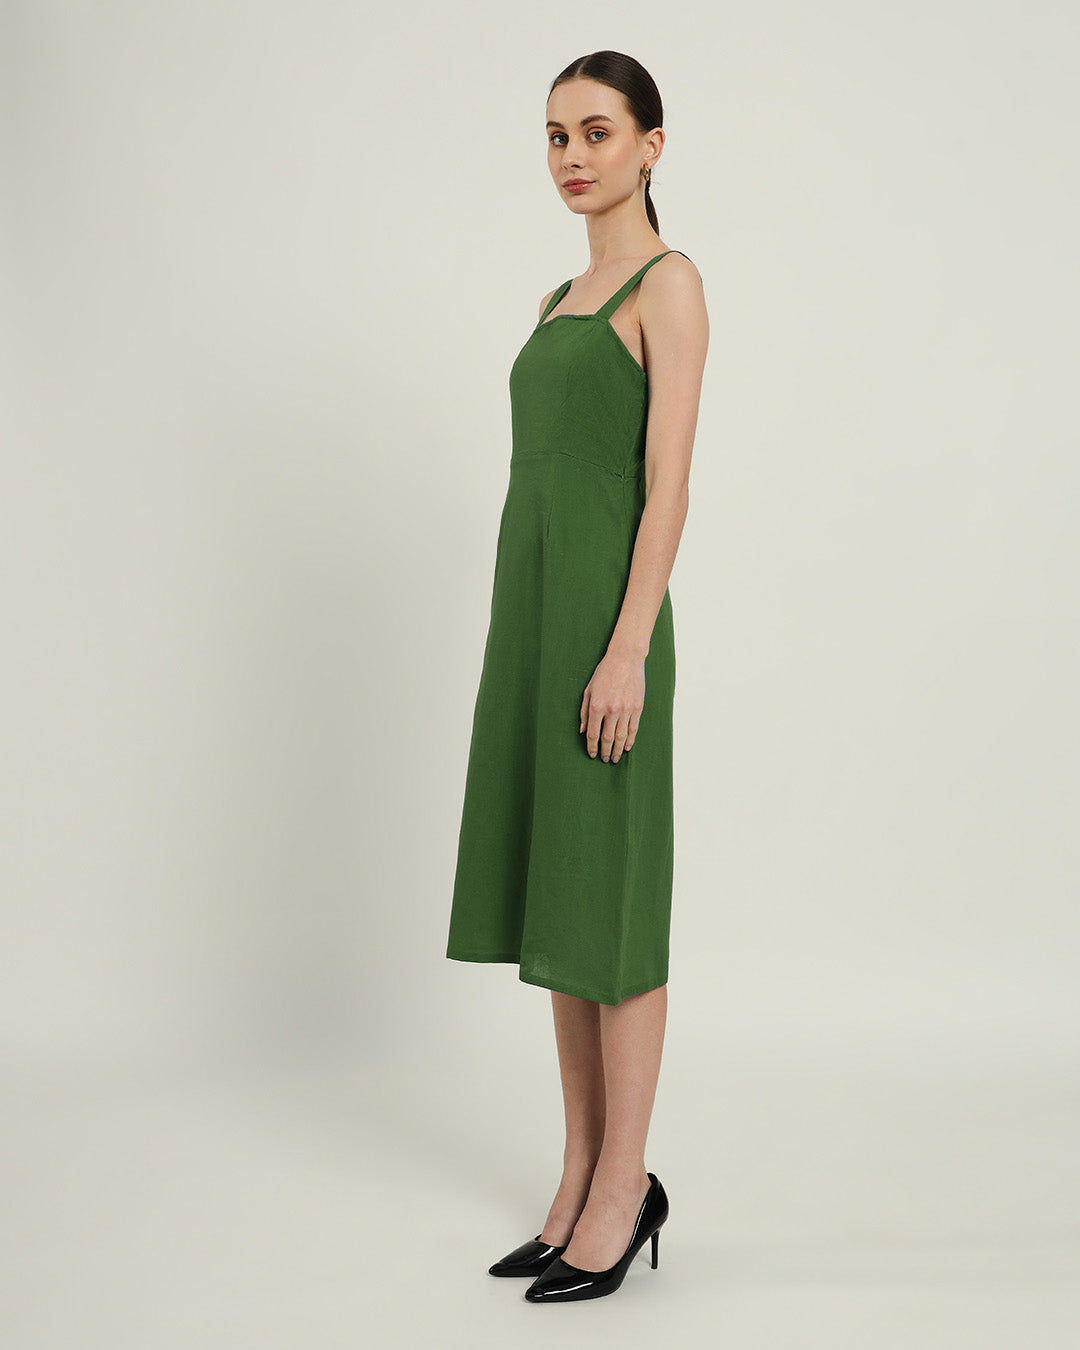 The Samara Emerald Dress